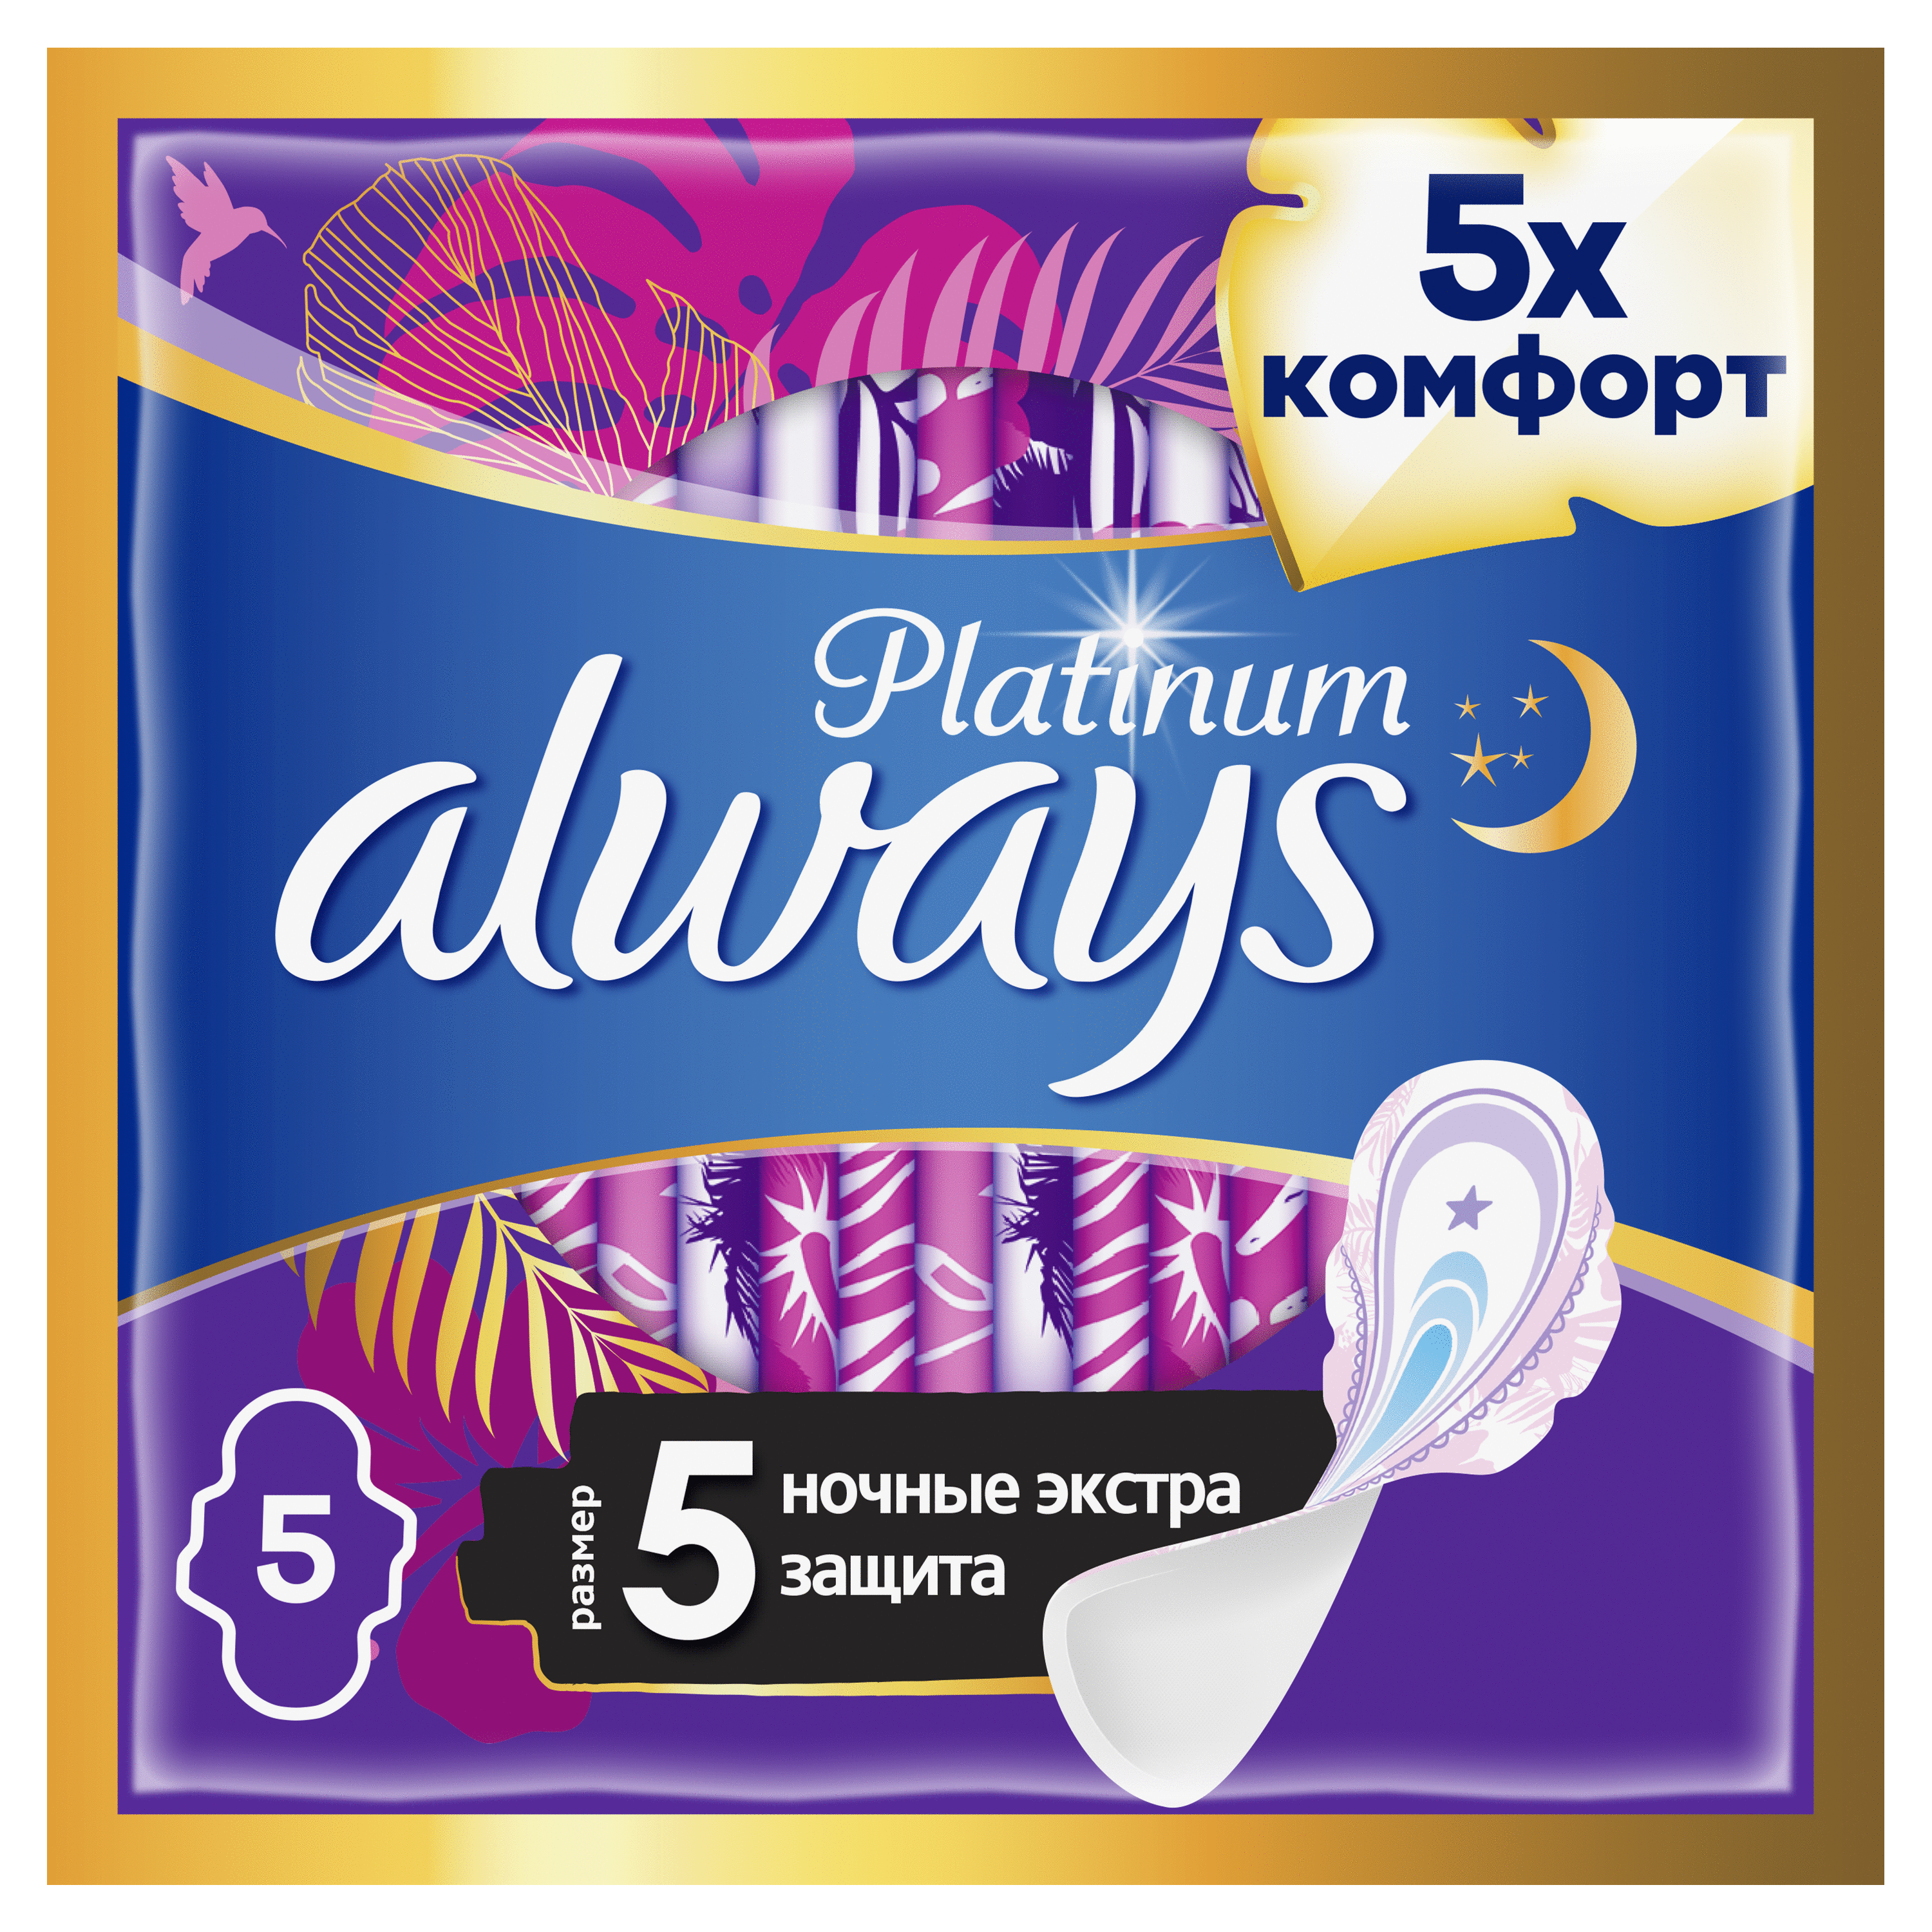 Always Platinum ночные экстра защита прокладки женские размер 5, капли 7, прокладок 5